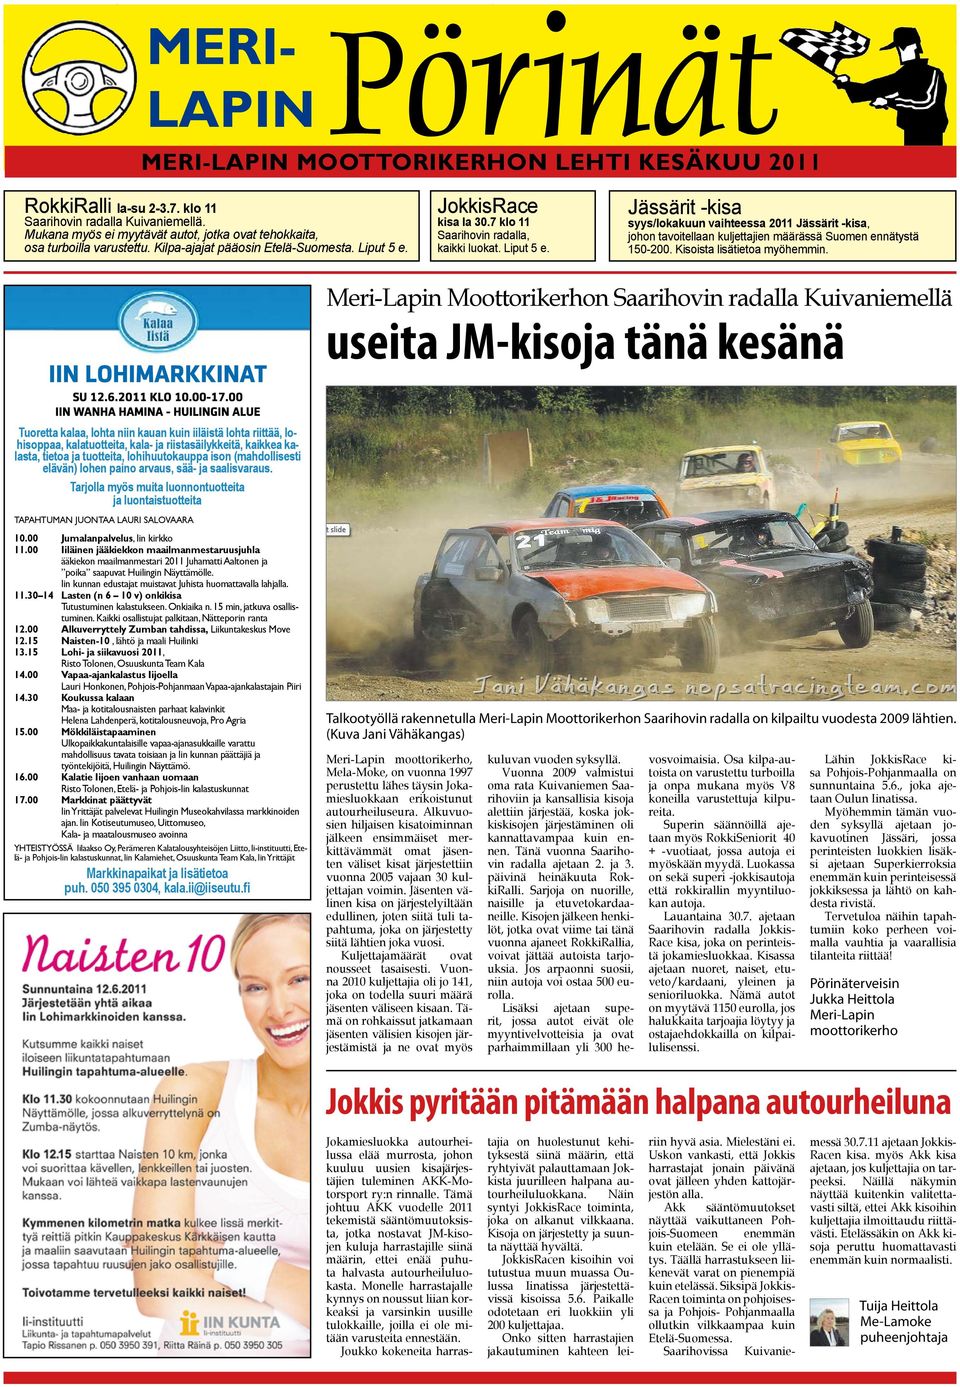 Liput 5 e. Jässärit -kisa syys/lokakuun vaihteessa 2011 Jässärit -kisa, johon tavoitellaan kuljettajien määrässä Suomen ennätystä 150-200. Kisoista lisätietoa myöhemmin.